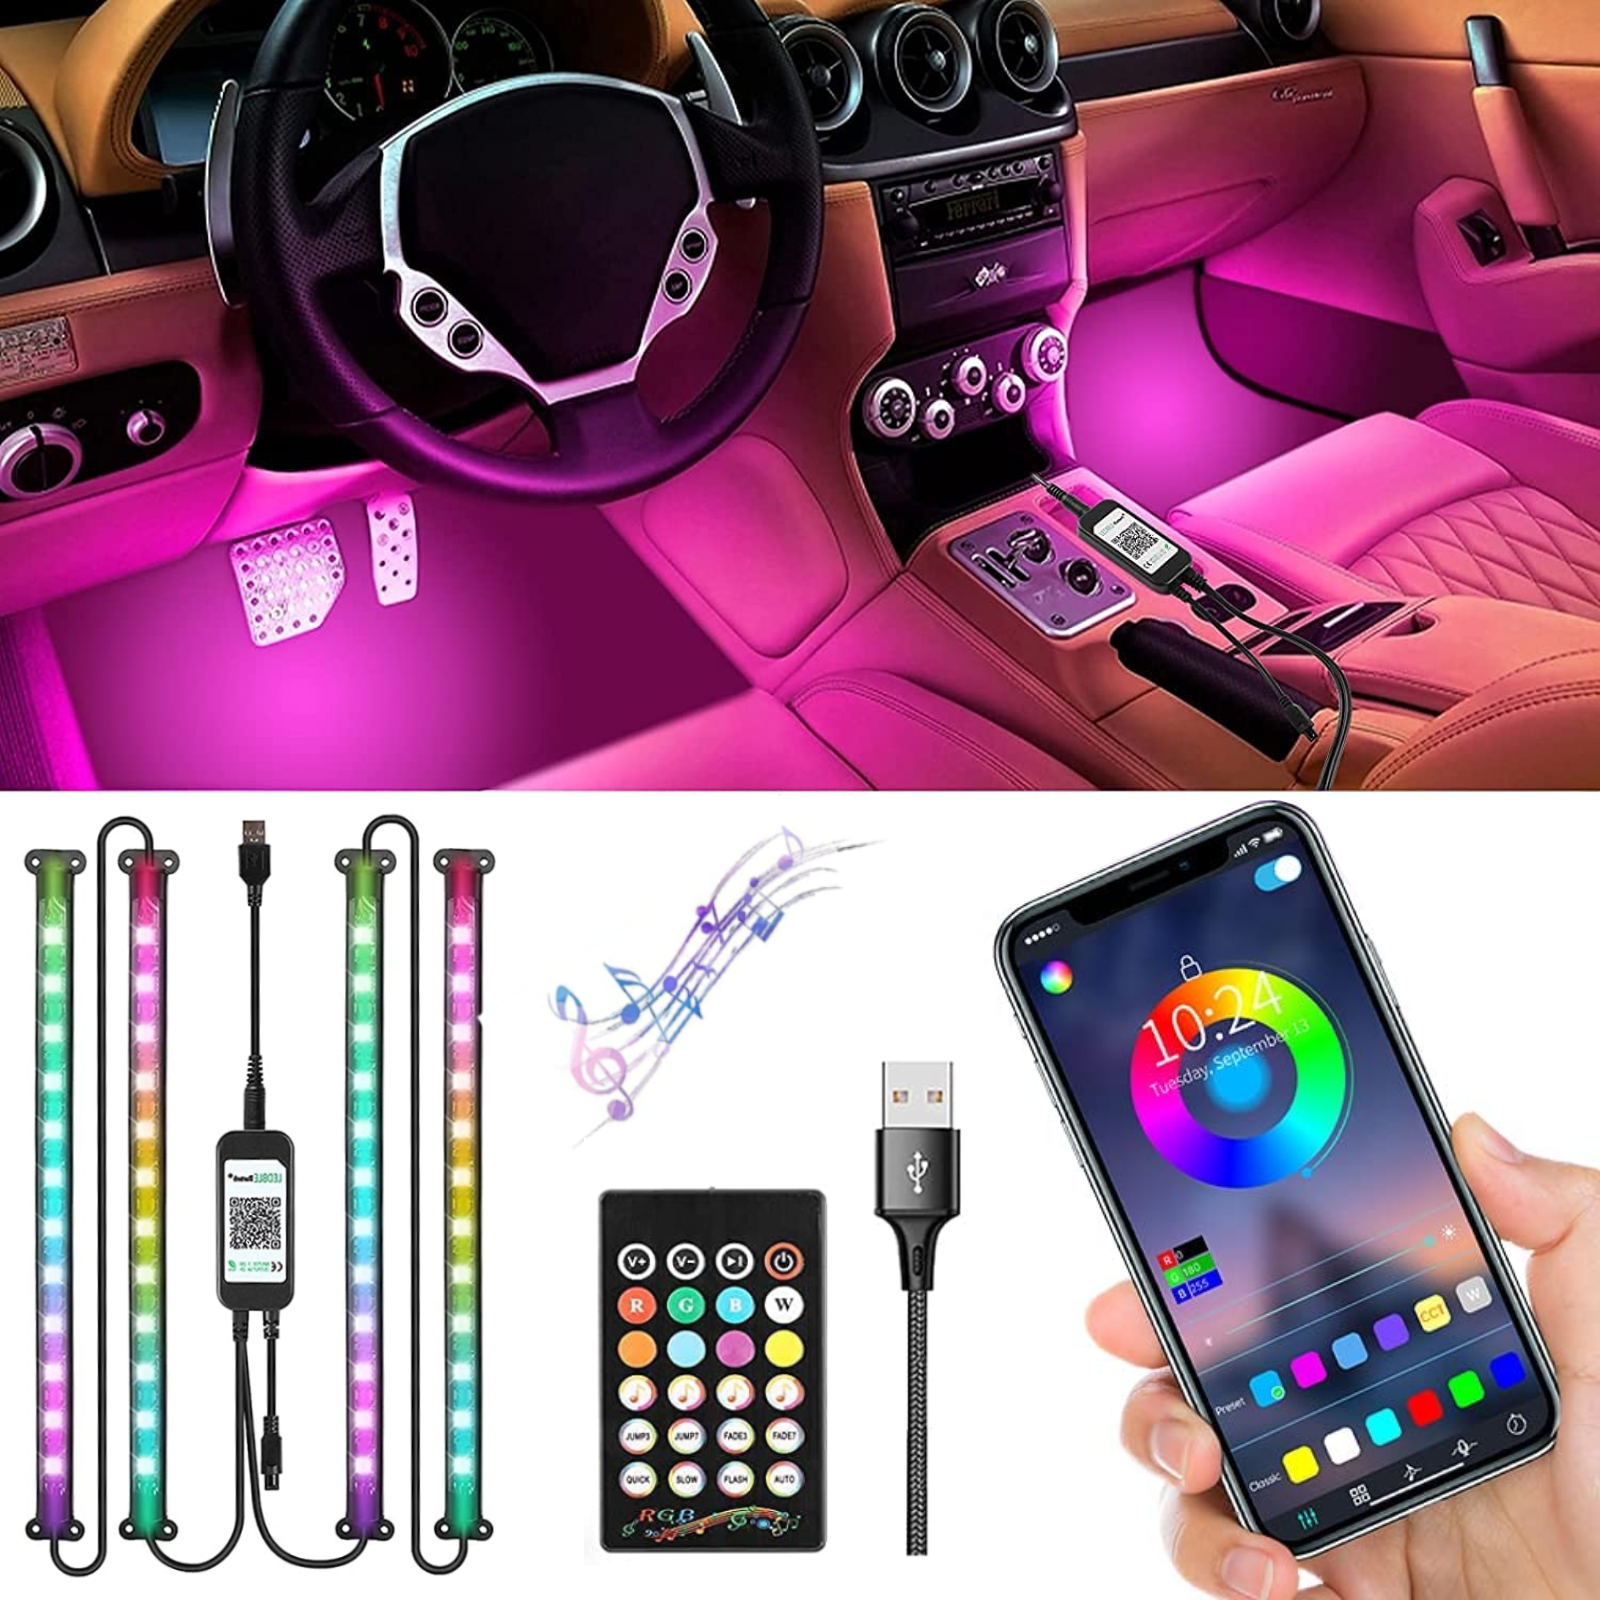 Tira de luz interior LED para coche, 16 Millones de Colores Luces Led Coche  Interior luz ambiental del coche, Luz de atmósfera de automóvil RGB por